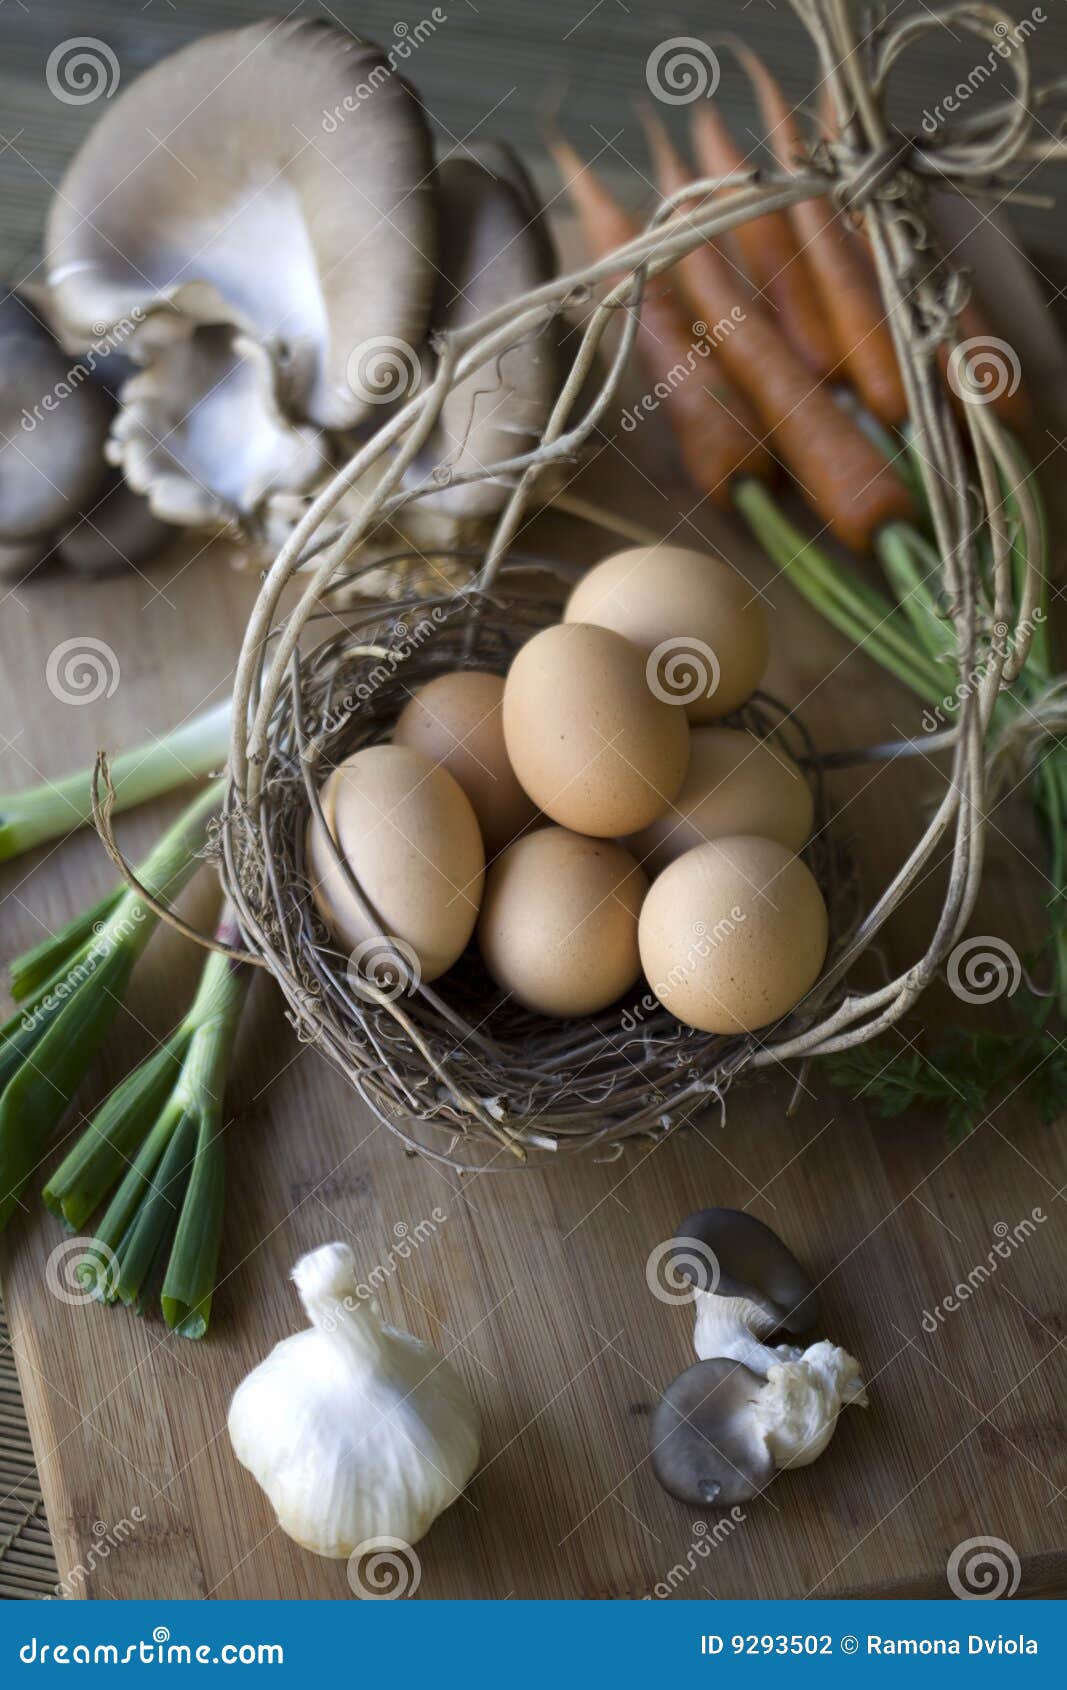 Ovos orgânicos frescos. Ovos, cogumelos, cenouras e alho frescos em uma placa de desbastamento